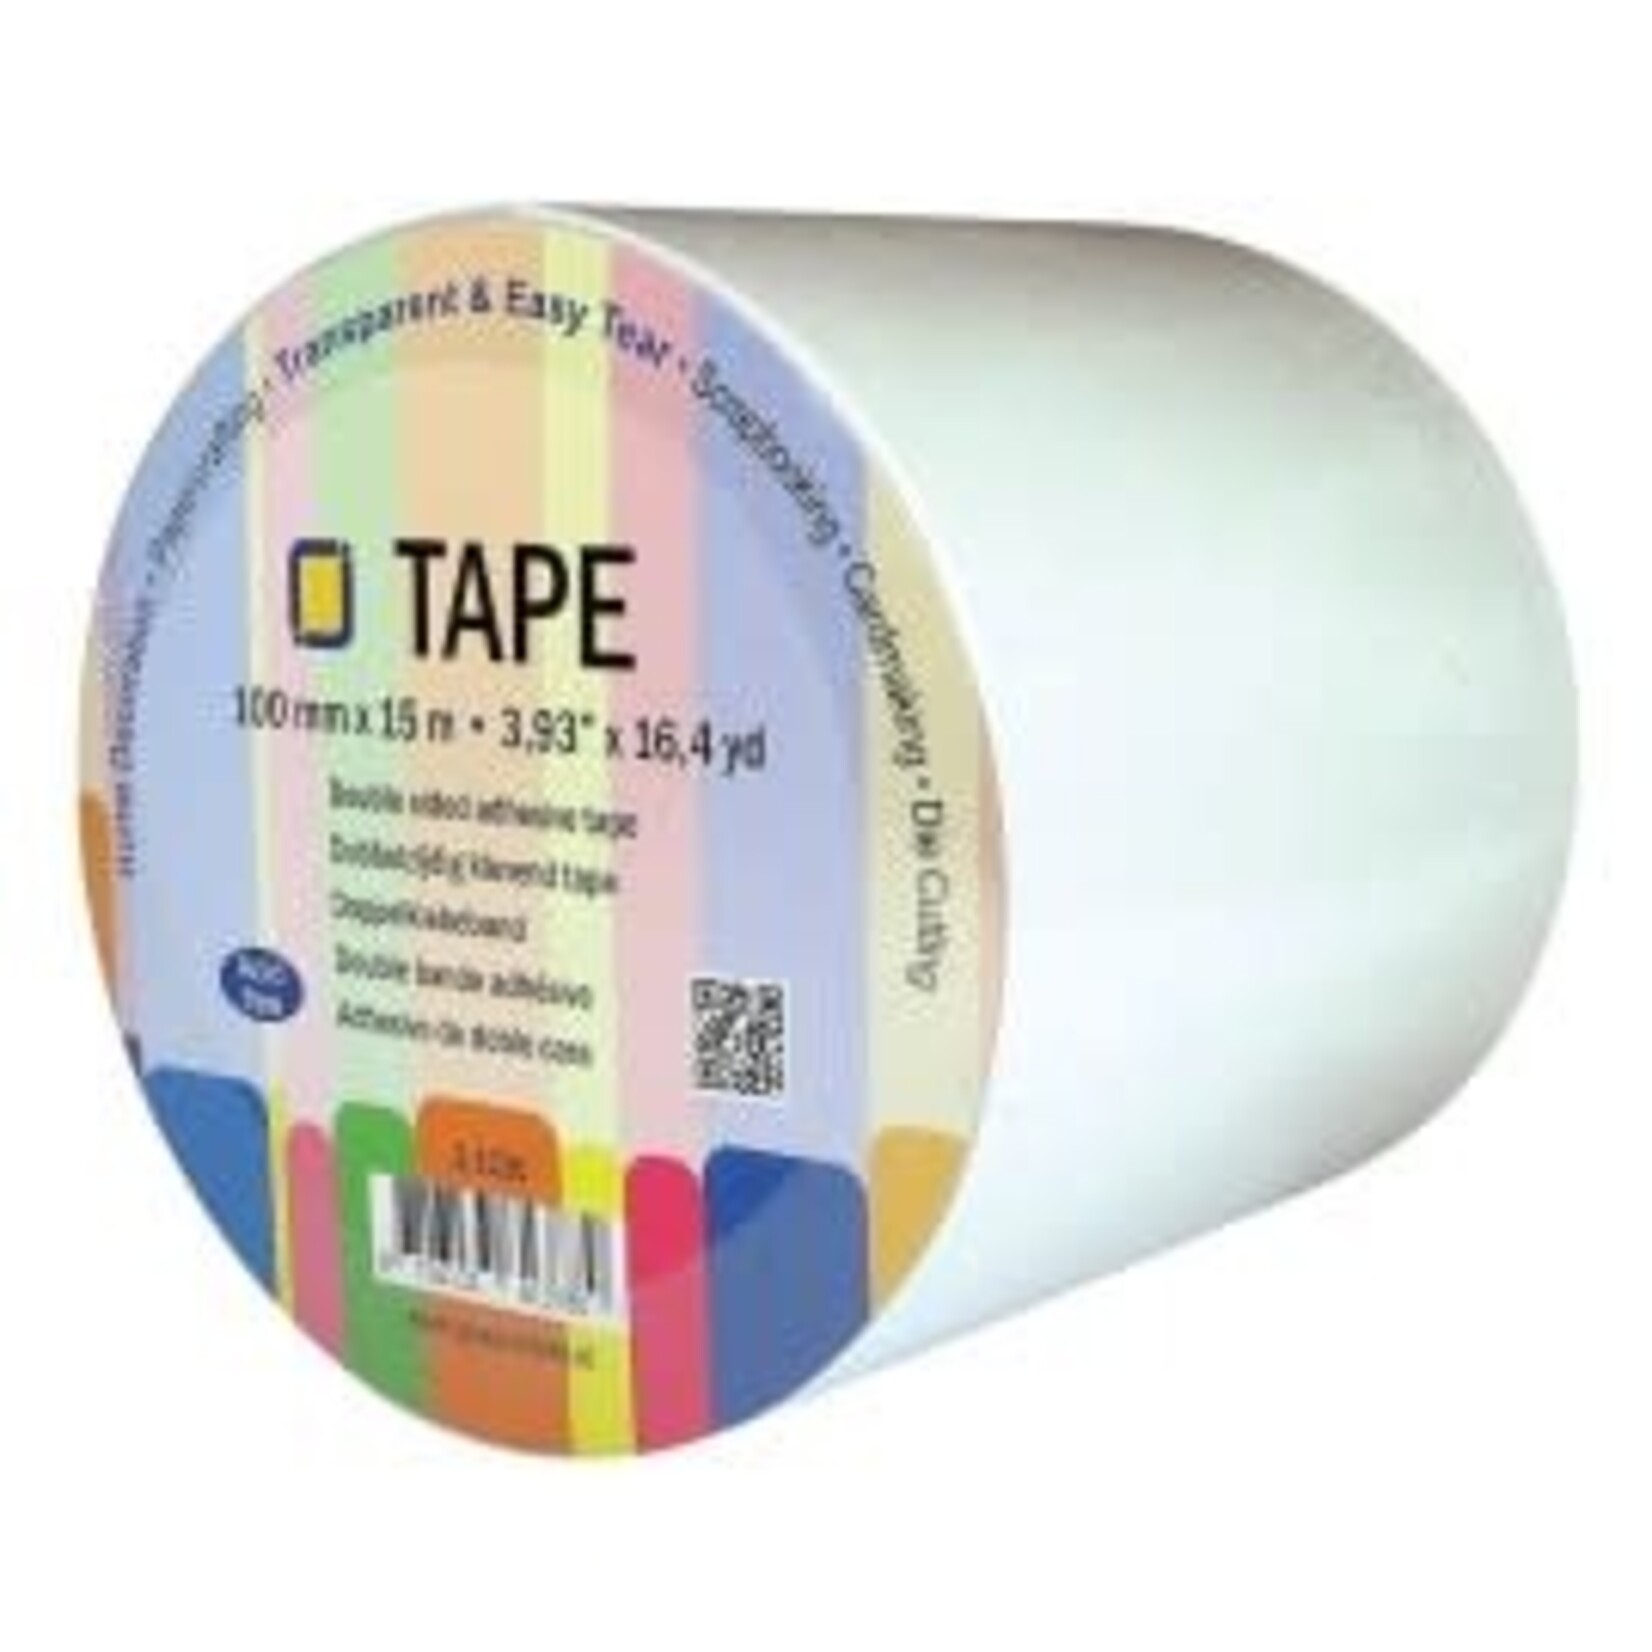 JeJe Dubbelzijdig tape (100 mm, 15 meter, Easy tear)